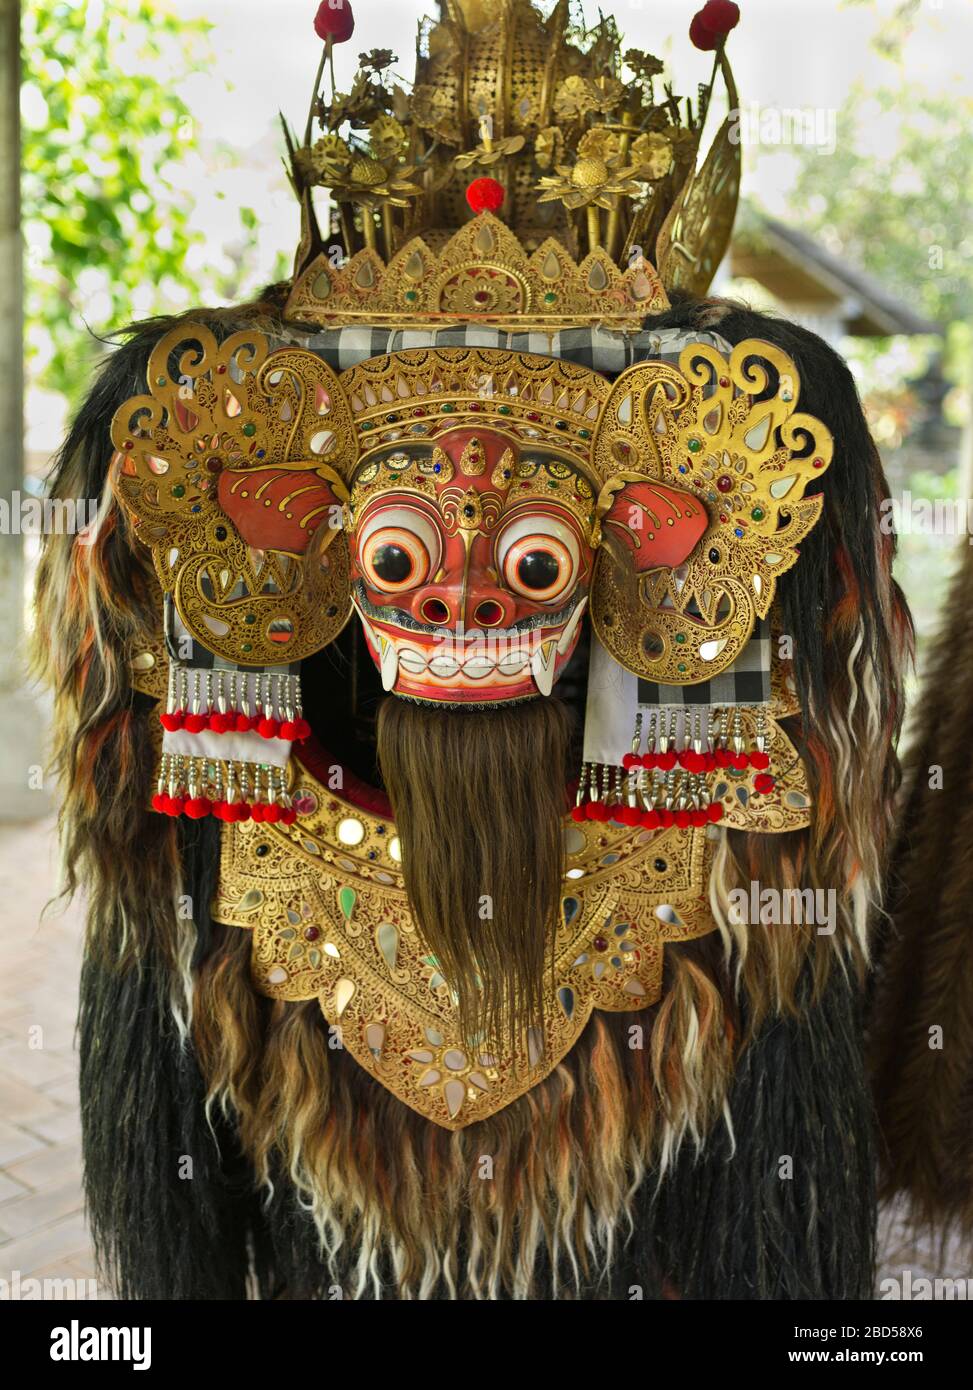 dh Pura Taman Ayun Königlicher Tempel BALI INDONESIEN Balinesischer Hindu Mengwi Tempel Barong Tier Maske Mythos hinduismus Löwe asiatische religiöse Folklore Stockfoto